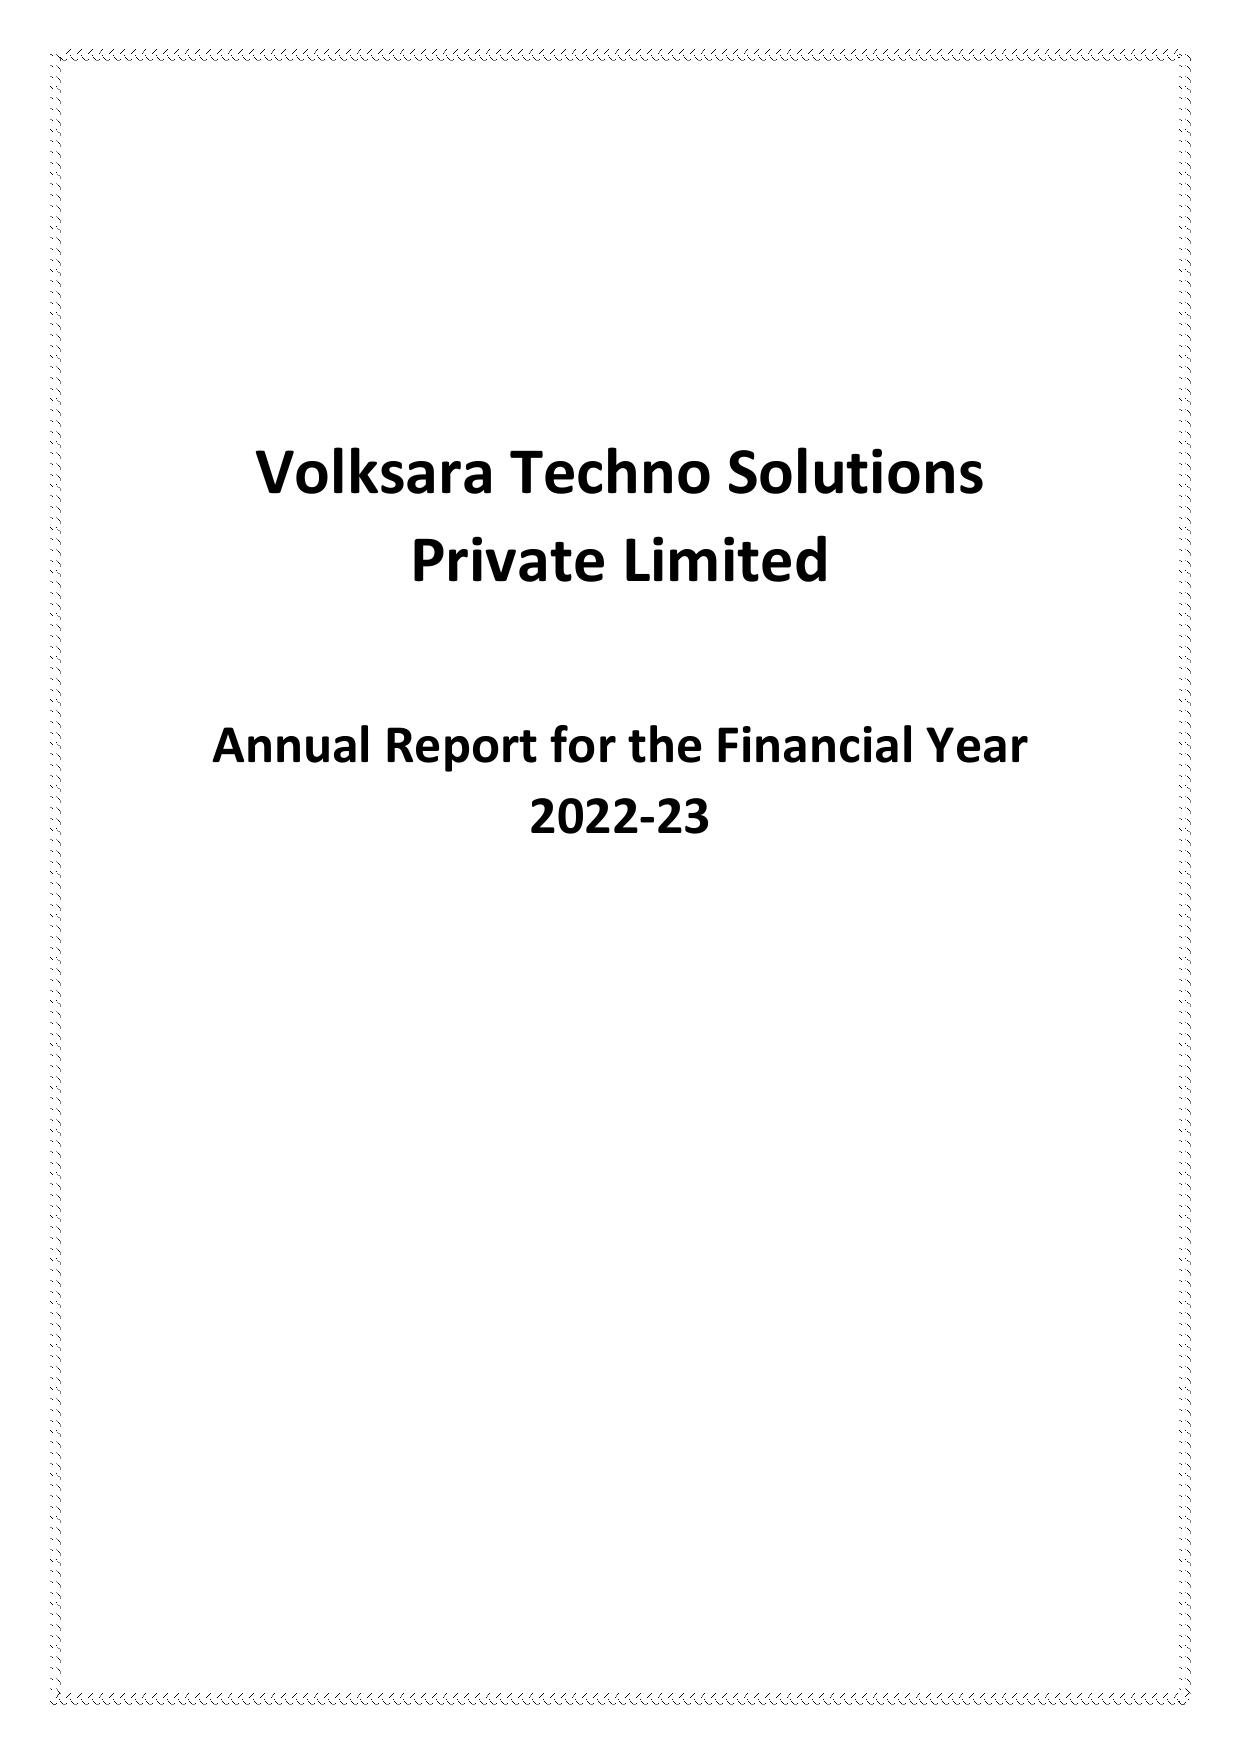 VOLKSARA 2023 Annual Report